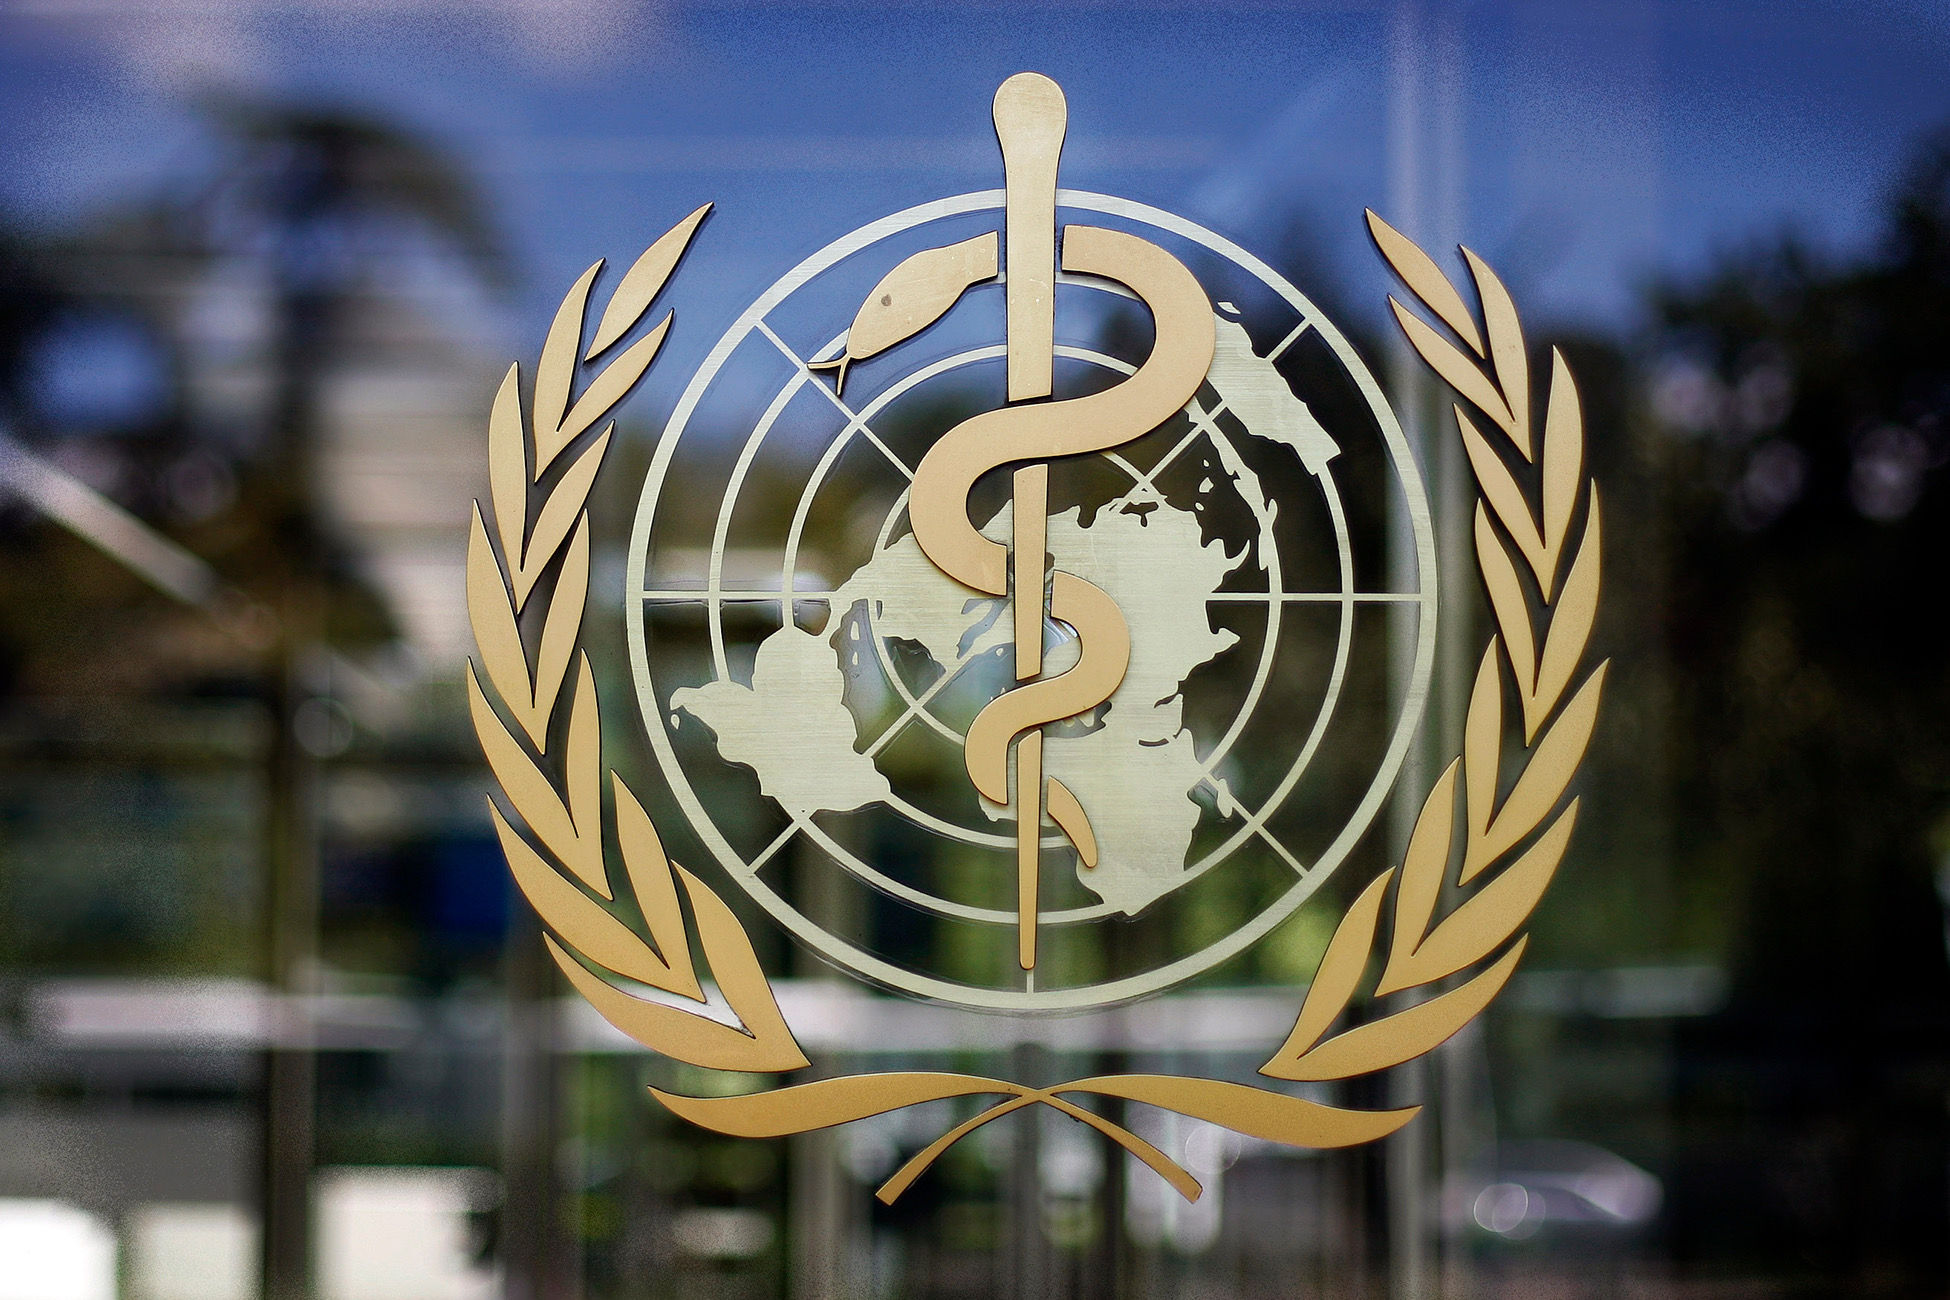 ԱՀԿ-ն պատվաստումից հետո Վրաստանում բուժքրոջ մահը «շատ հազվադեպ դեպք» է անվանել